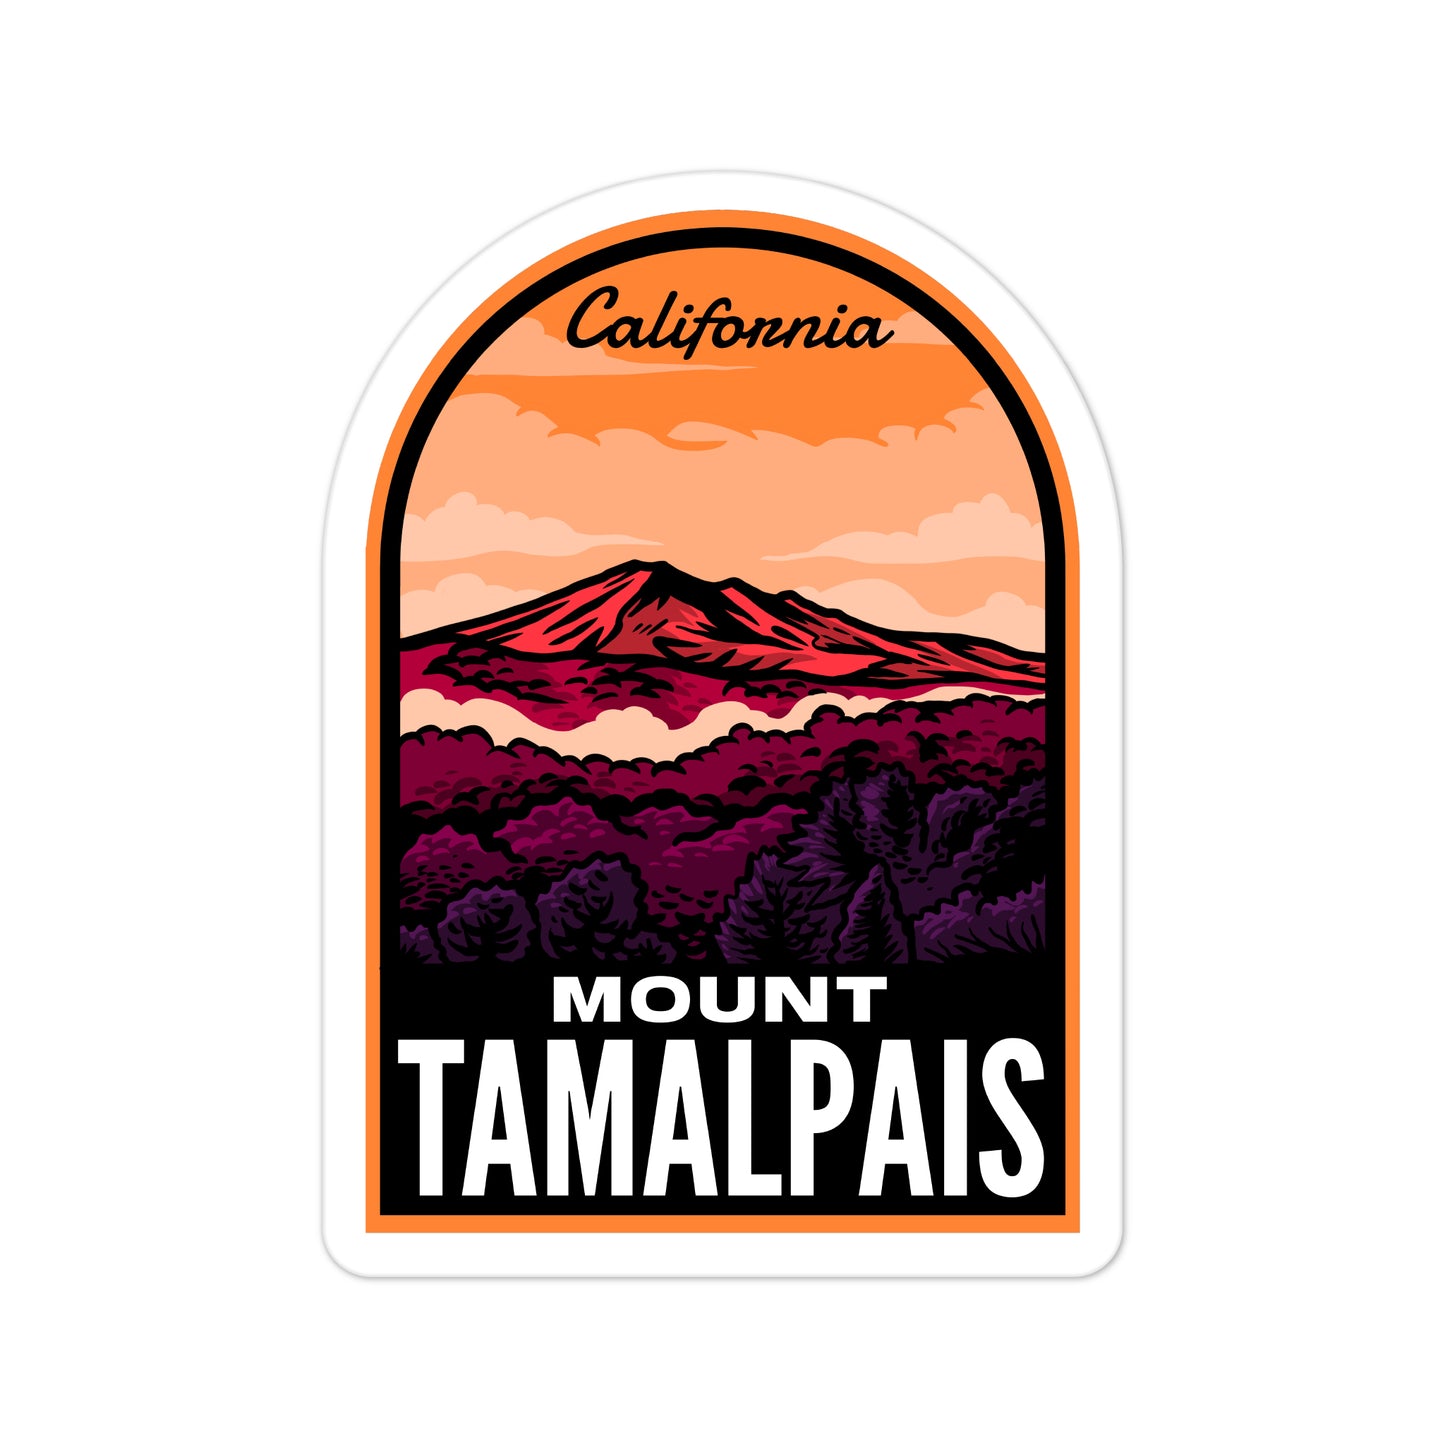 A sticker of Mount Tamalpais